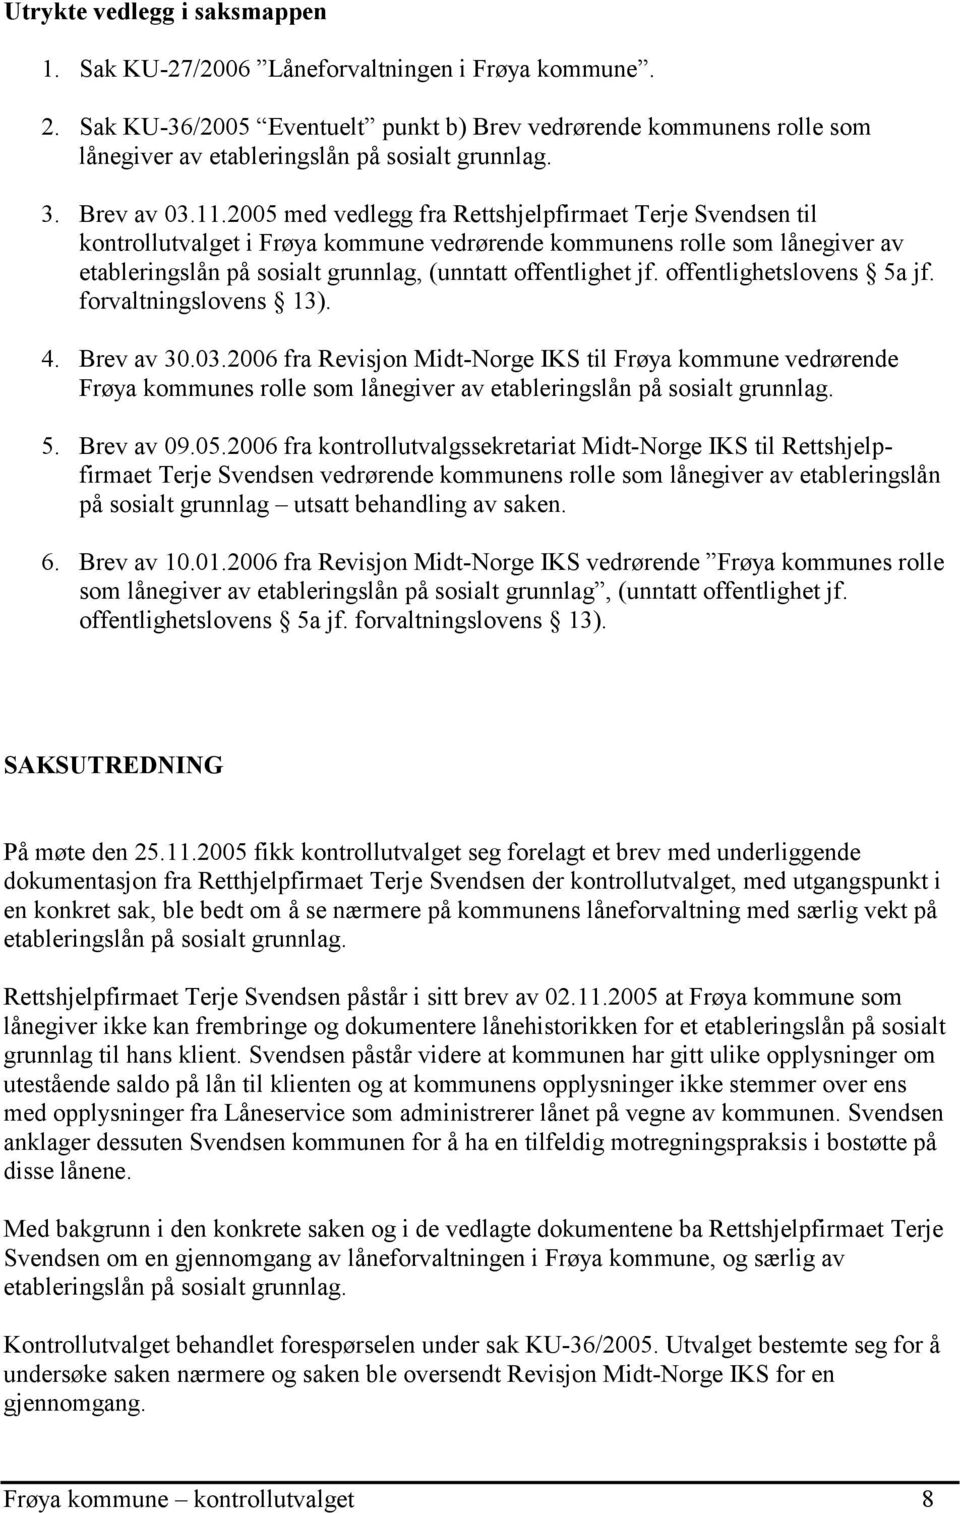 2005 med vedlegg fra Rettshjelpfirmaet Terje Svendsen til kontrollutvalget i Frøya kommune vedrørende kommunens rolle som lånegiver av etableringslån på sosialt grunnlag, (unntatt offentlighet jf.